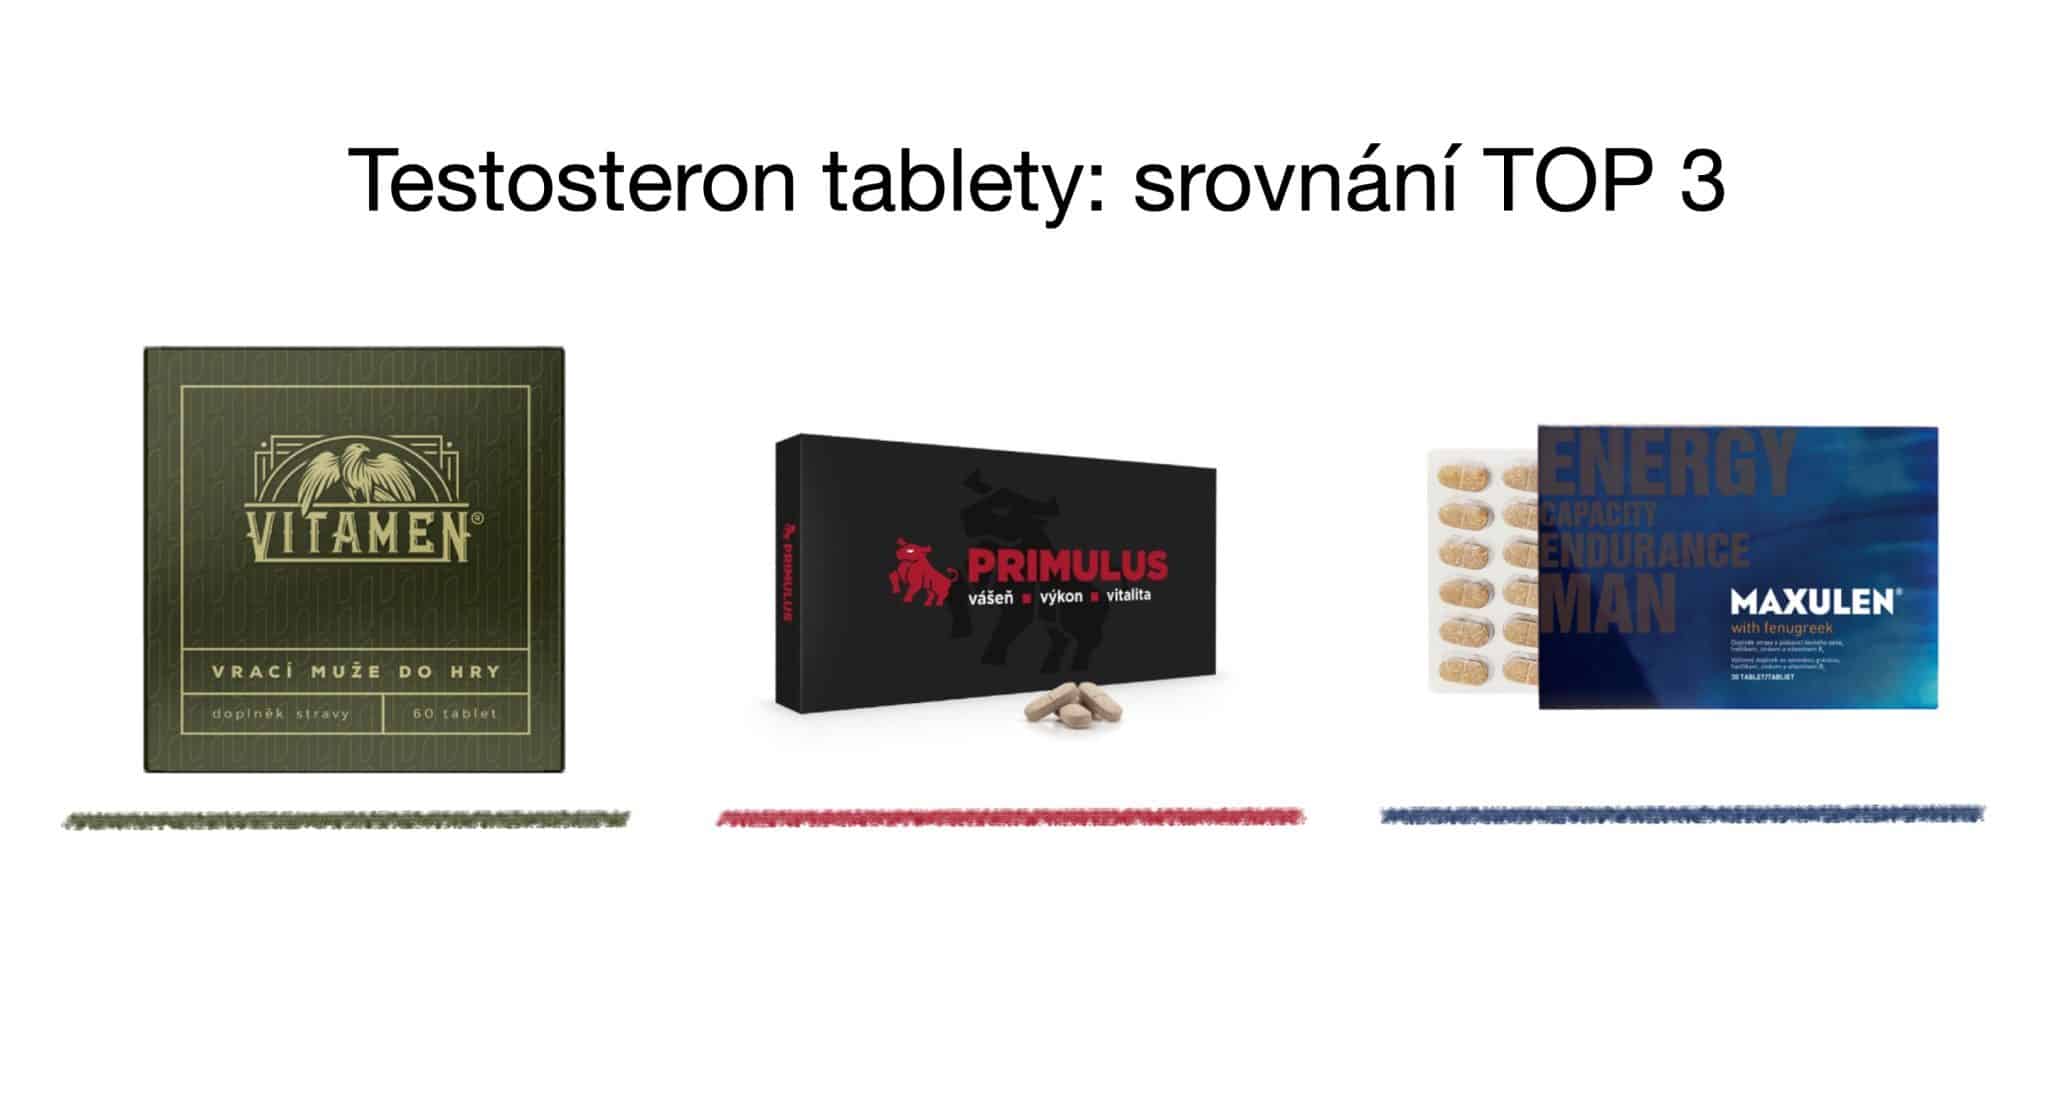 Testosteron tablety TOP 3 srovnání – vitamíny pro muže [recenze] 3